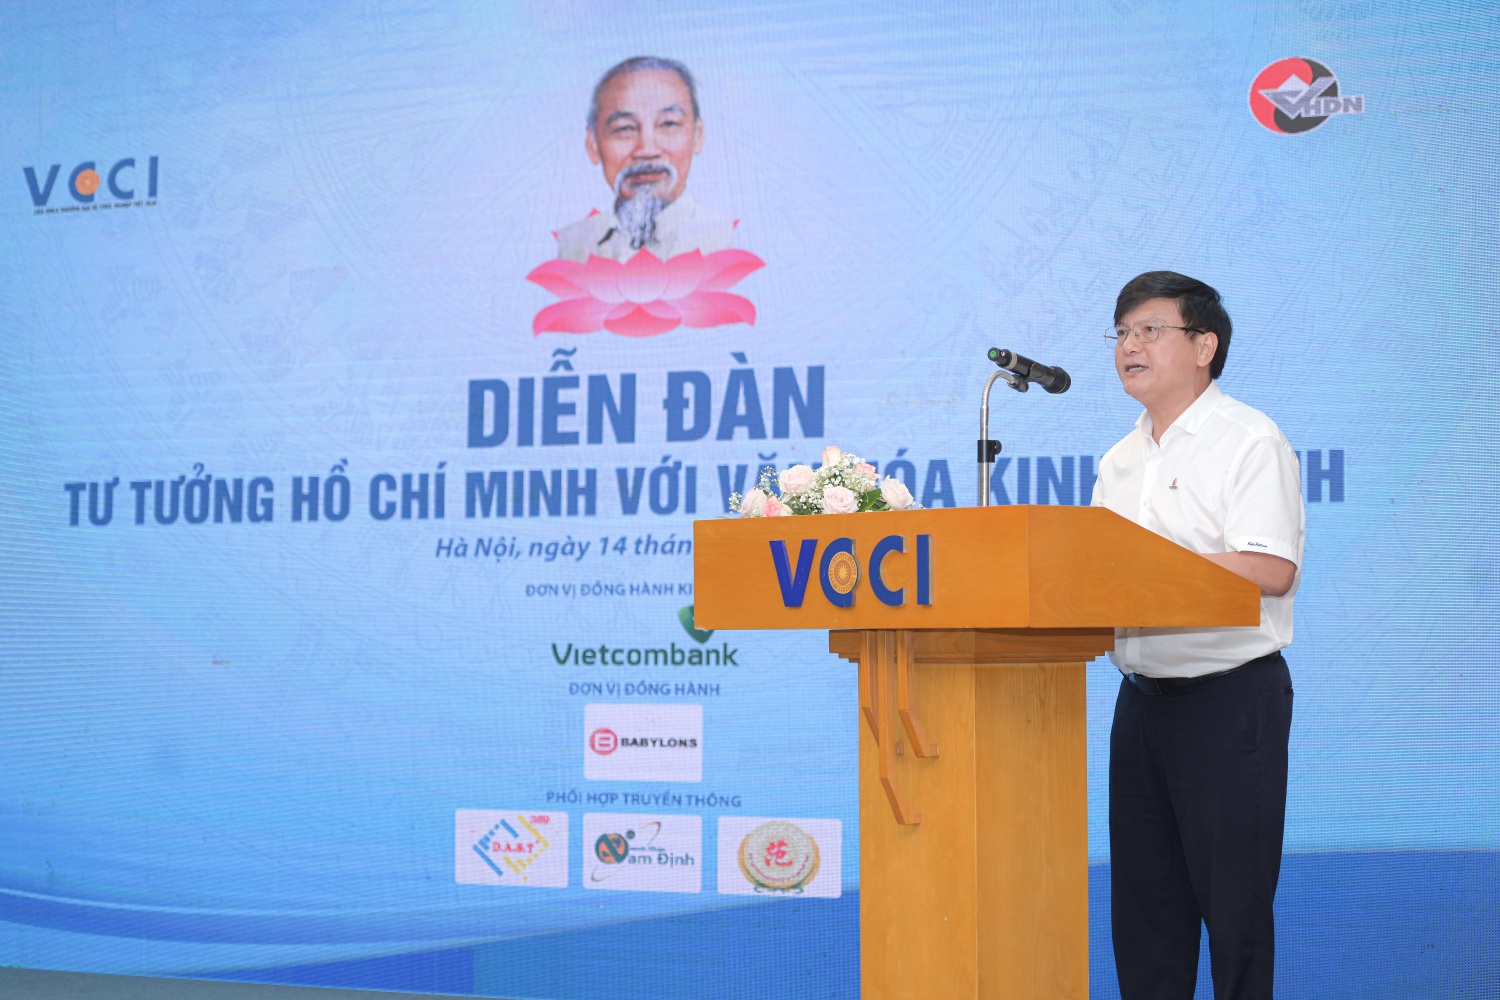 Petrovietnam tham dự Diễn đàn: 'Tư tưởng Hồ Chí Minh với văn hóa doanh nghiệp'